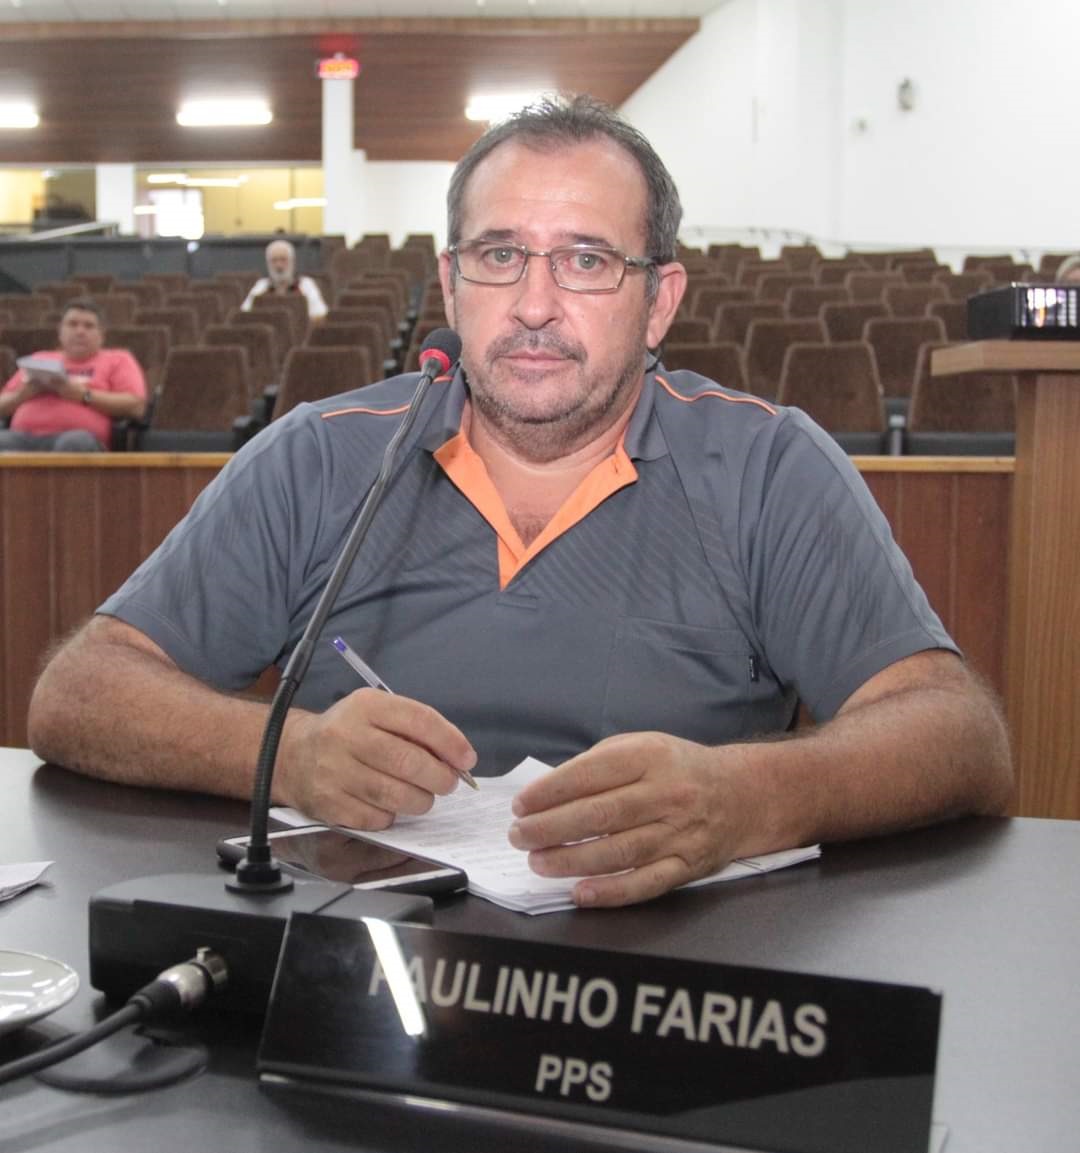 Paulinho Farias